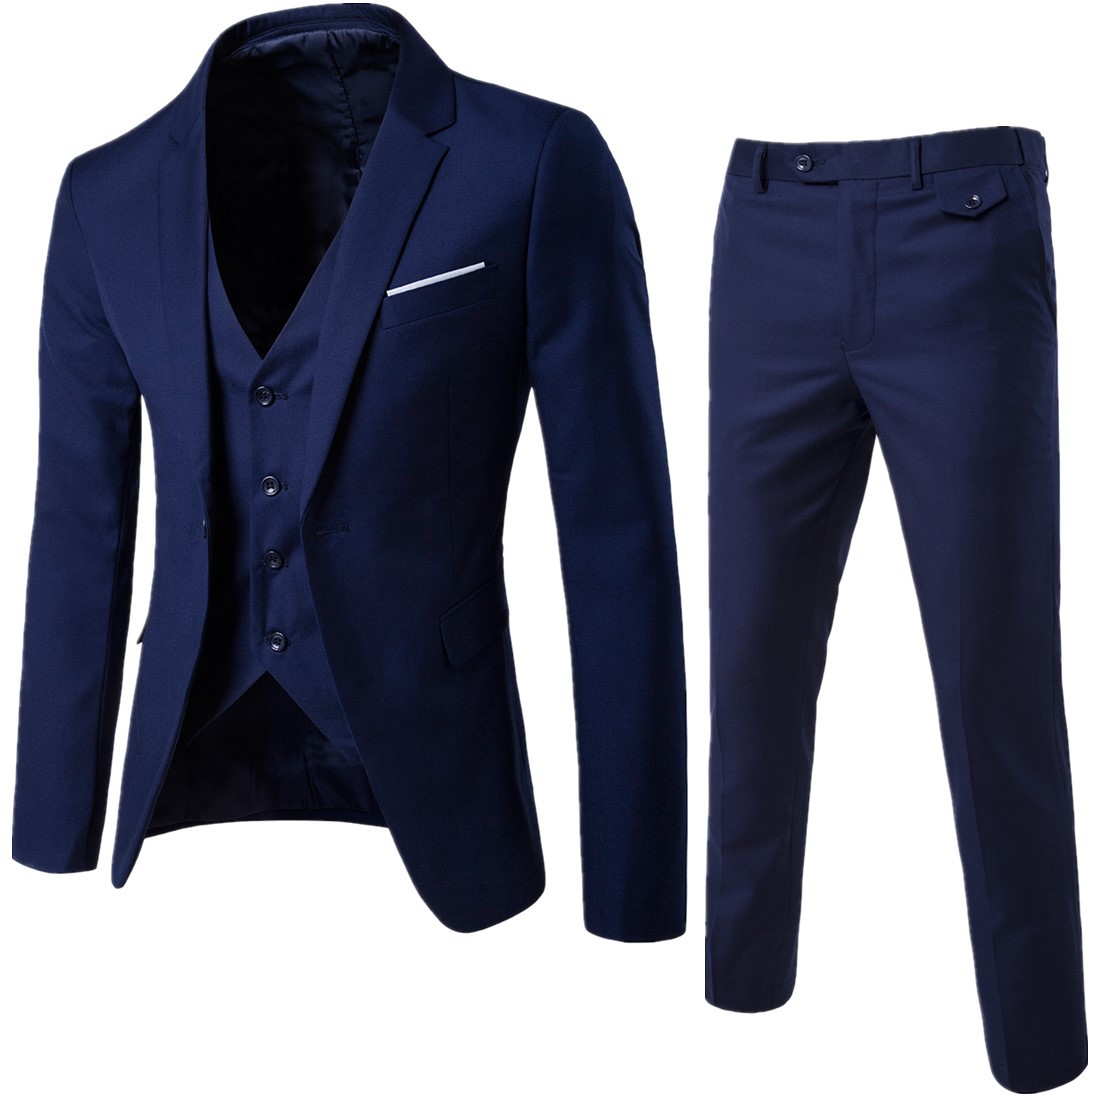 Spring new suit suit men's 2019 Korean slim stripe suit three piece business dress suit for men